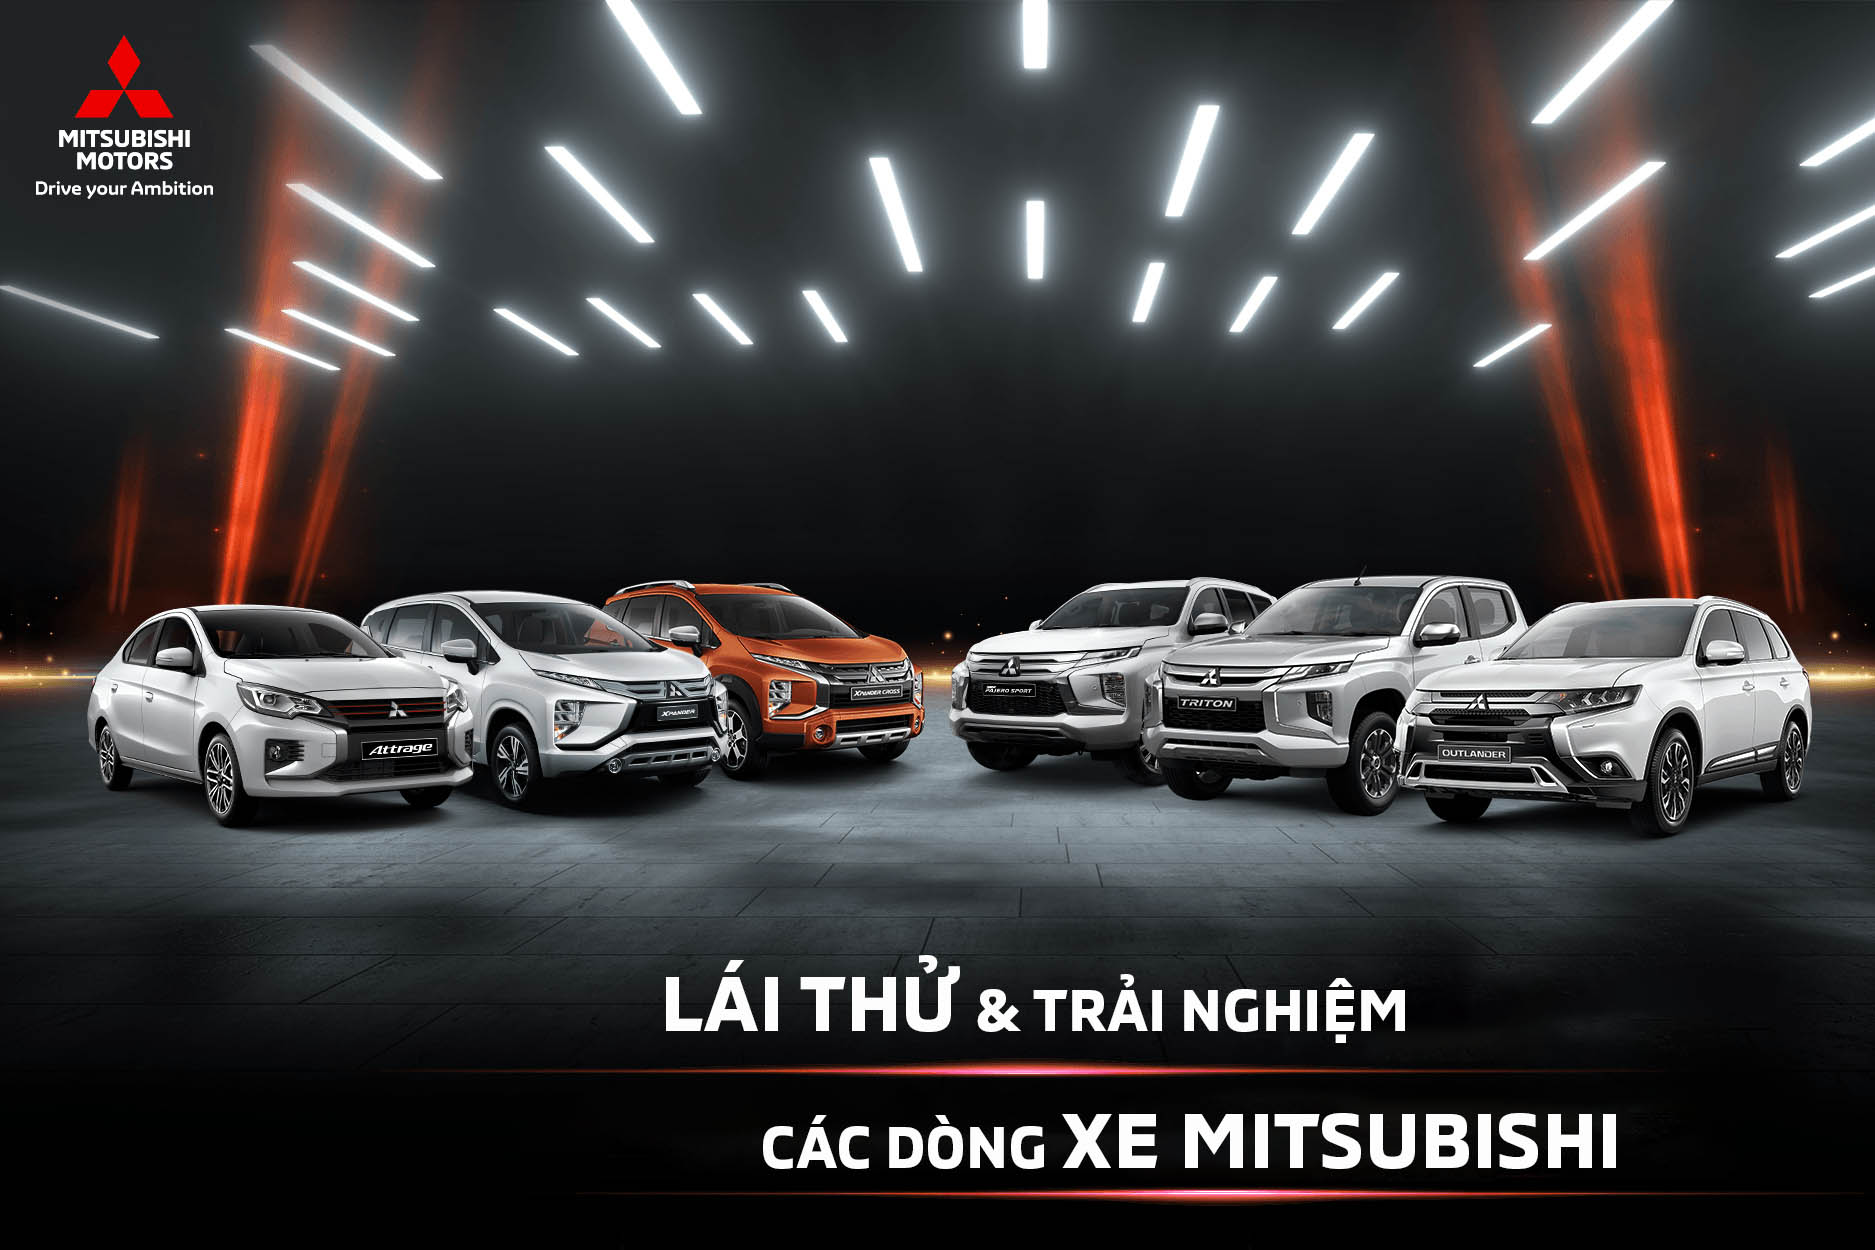 Chào đón bạn đến với Mitsubishi Bắc Ninh Auto - một trong những đại lý xe hơi uy tín nhất. Trang bị tốt nhất về dịch vụ, đội ngũ nhân viên chuyên nghiệp và danh mục sản phẩm đa dạng, chúng tôi đảm bảo sẽ mang lại cho bạn trải nghiệm mua sắm xe hơi tuyệt vời nhất. Hãy xem những bức ảnh bìa xe đầy ấn tượng để cảm thấy sự khác biệt của chúng tôi.